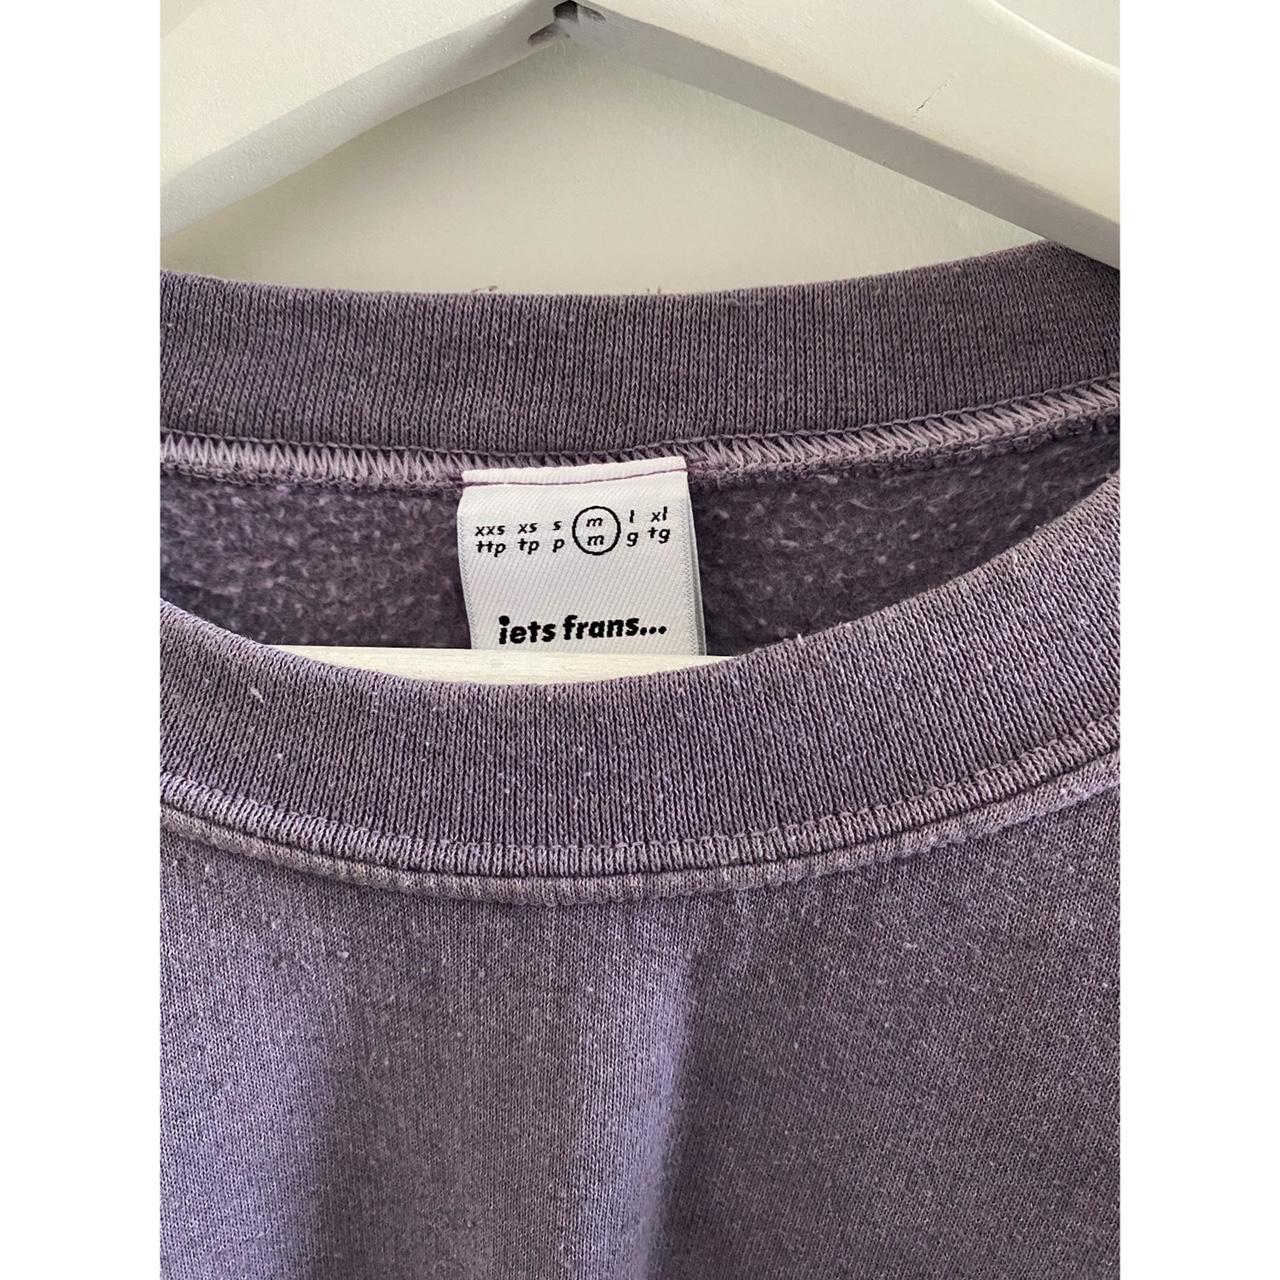 Urban Outfitters Women's Purple Sweatshirt (3)